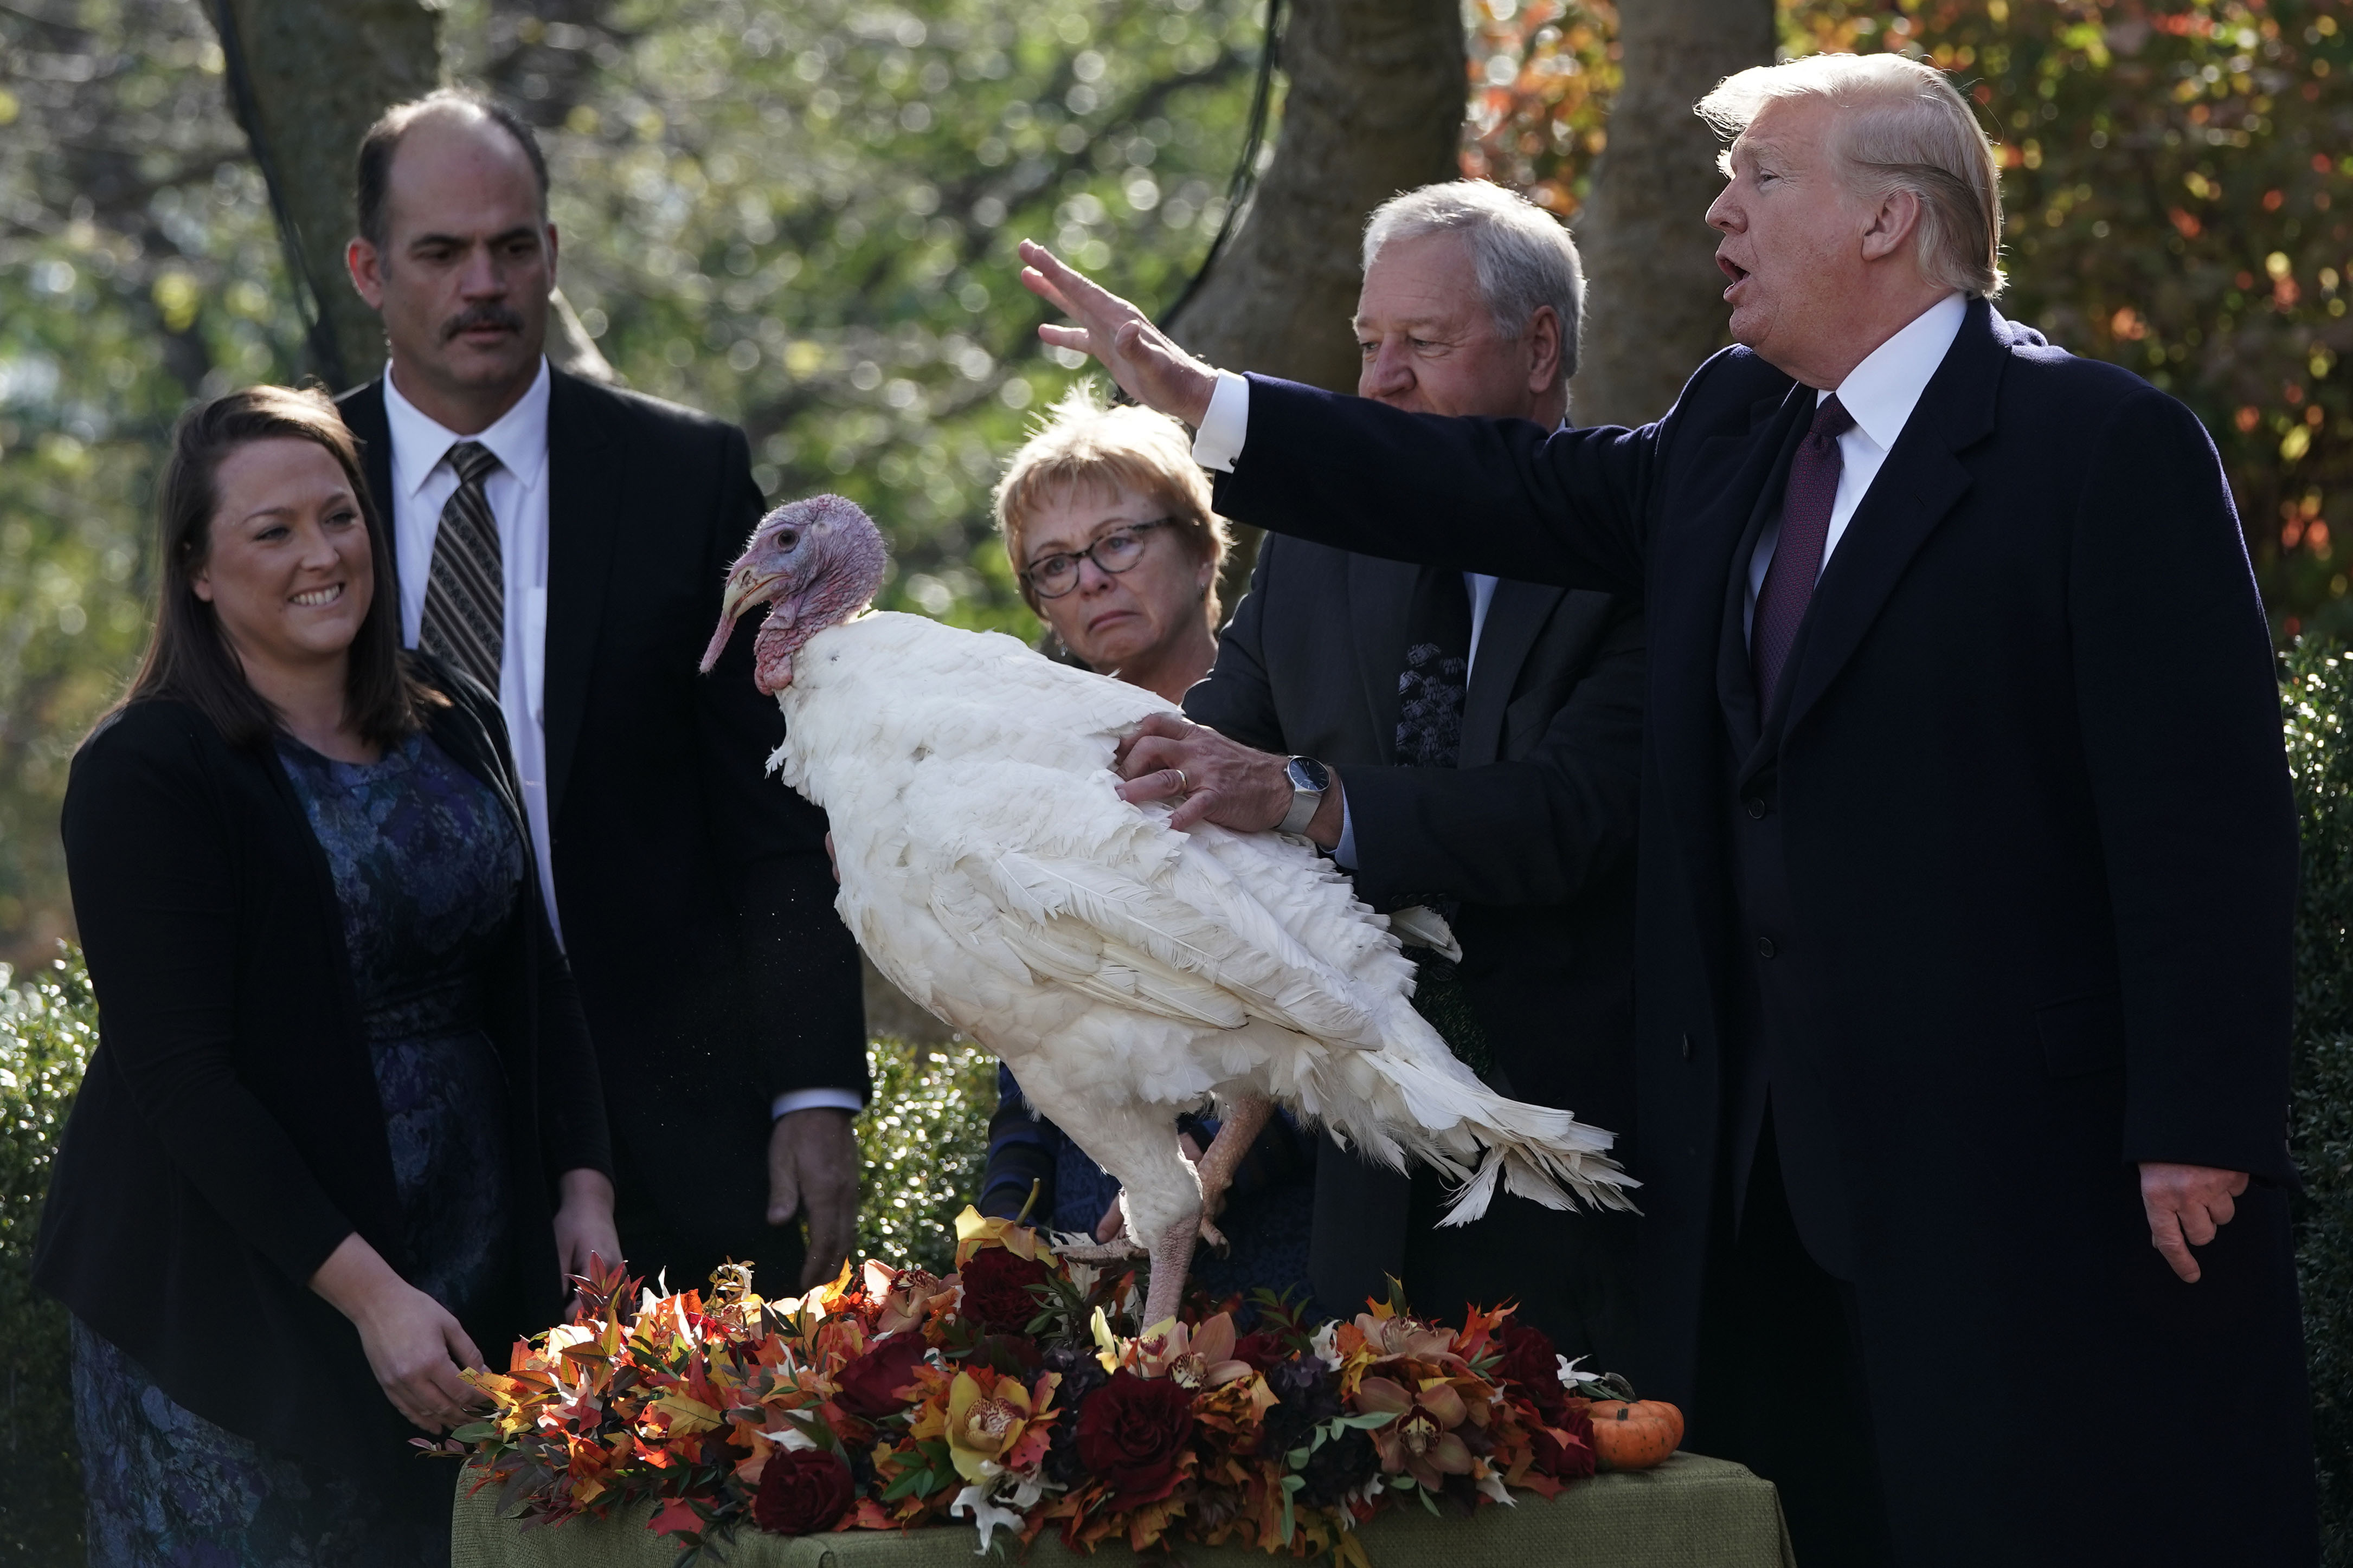 Trump participates in the 2018 turkey pardoning event. 